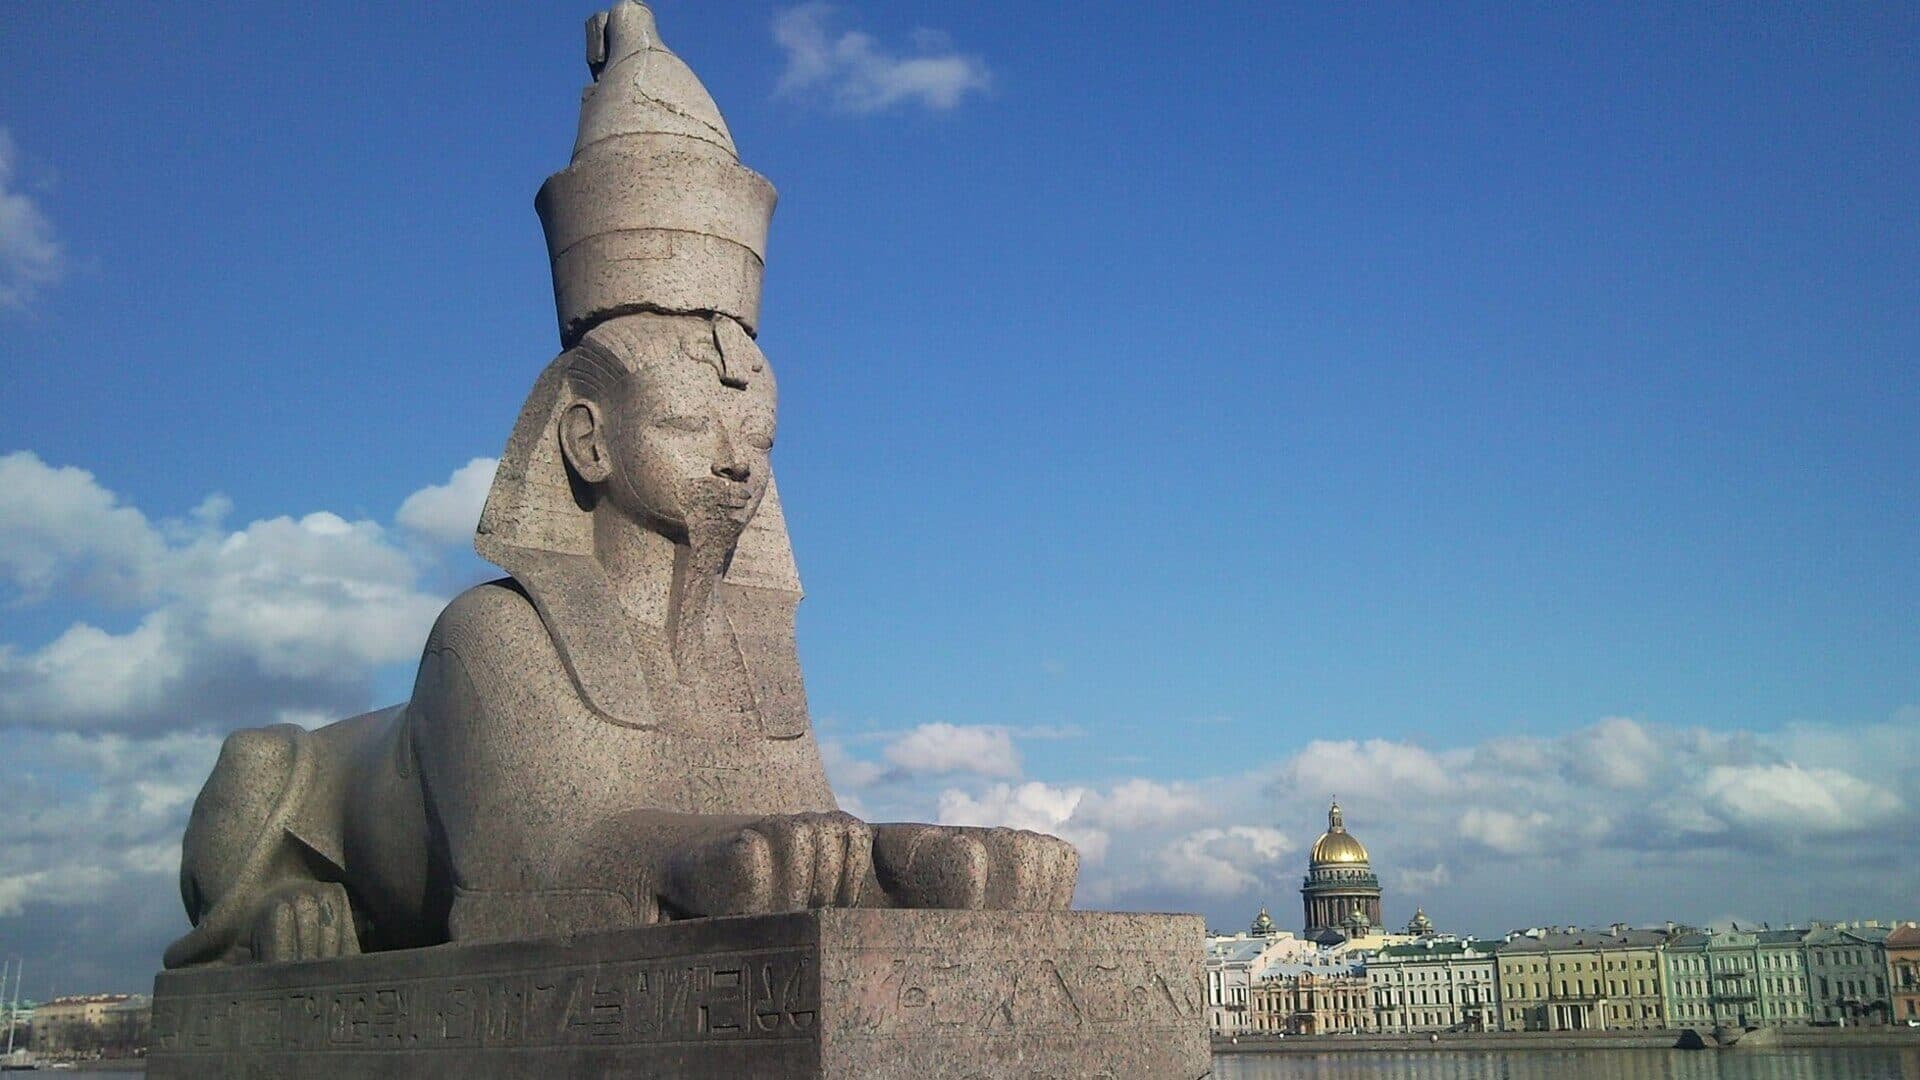 Петербург с восточным колоритом — отголоски Китая и Египта на улицах города